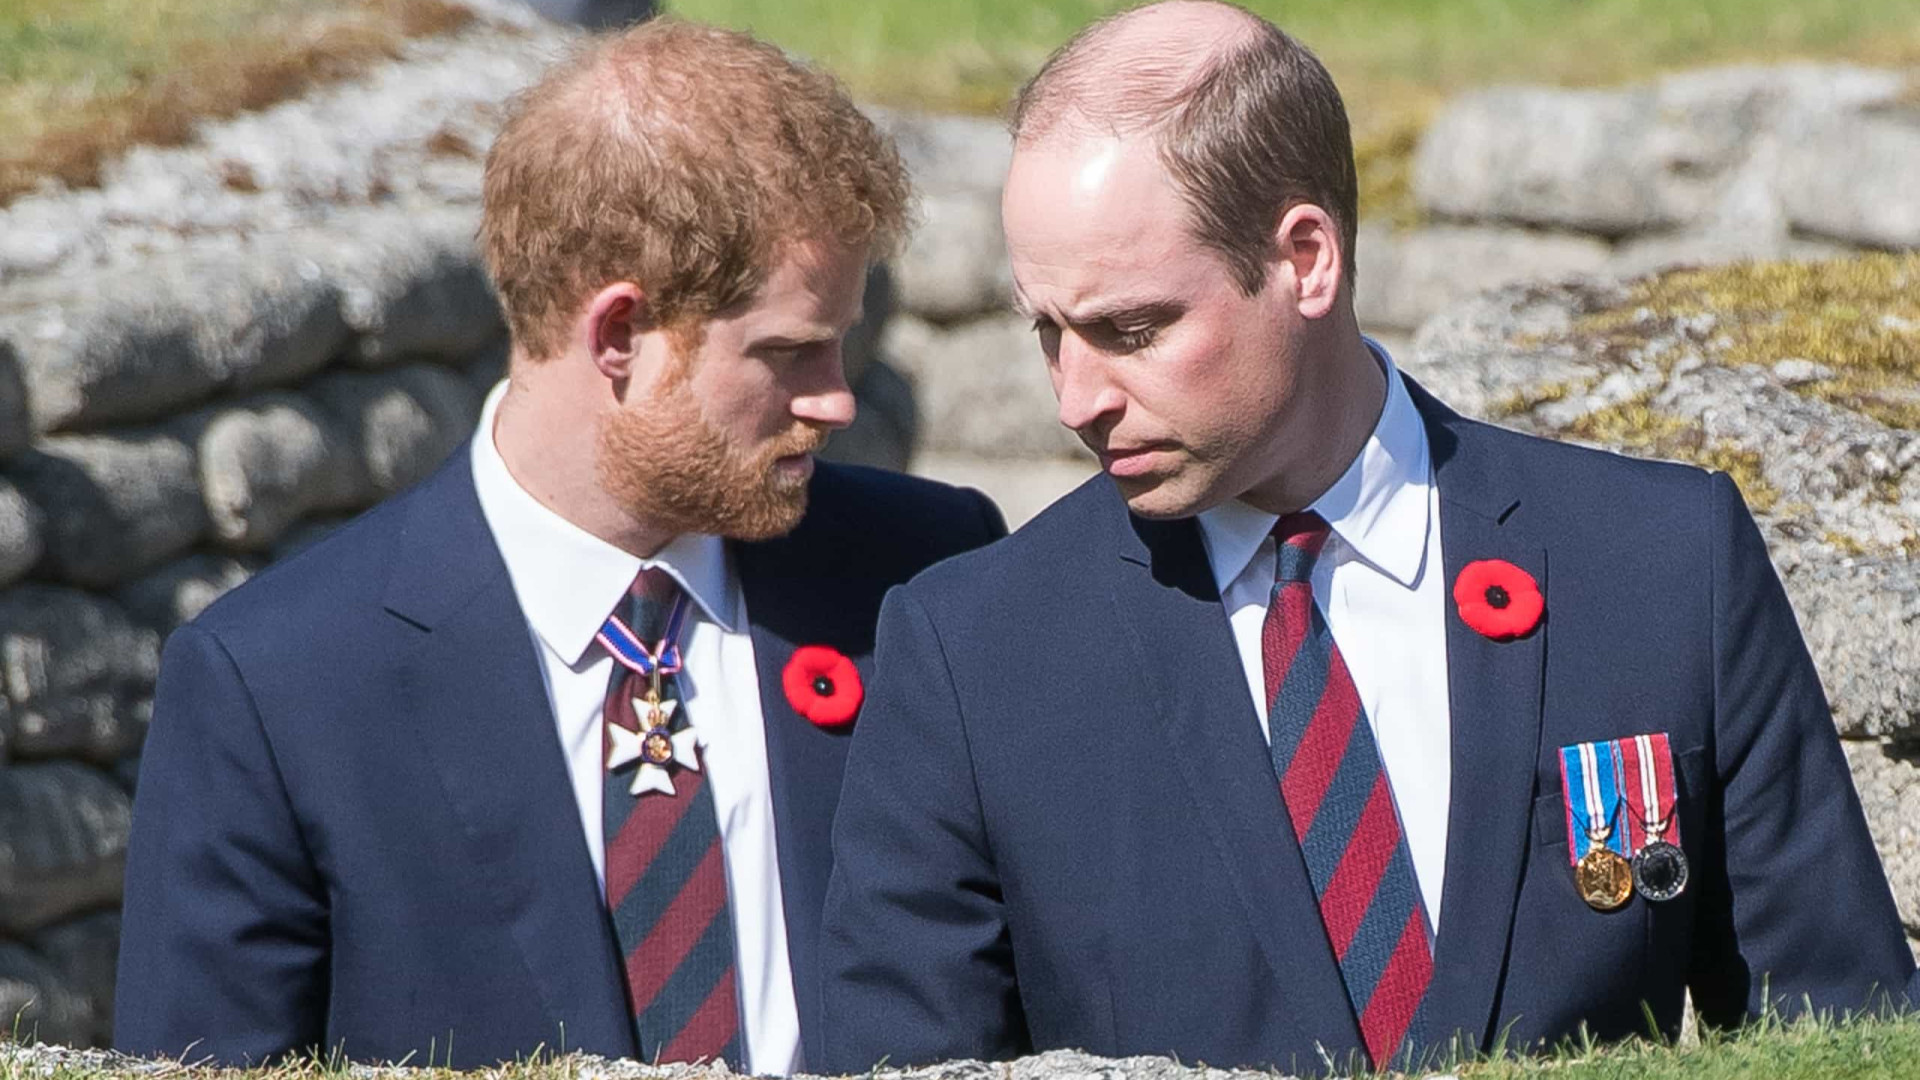 Príncipes Harry e William caminharão separadamente em cortejo fúnebre do avô